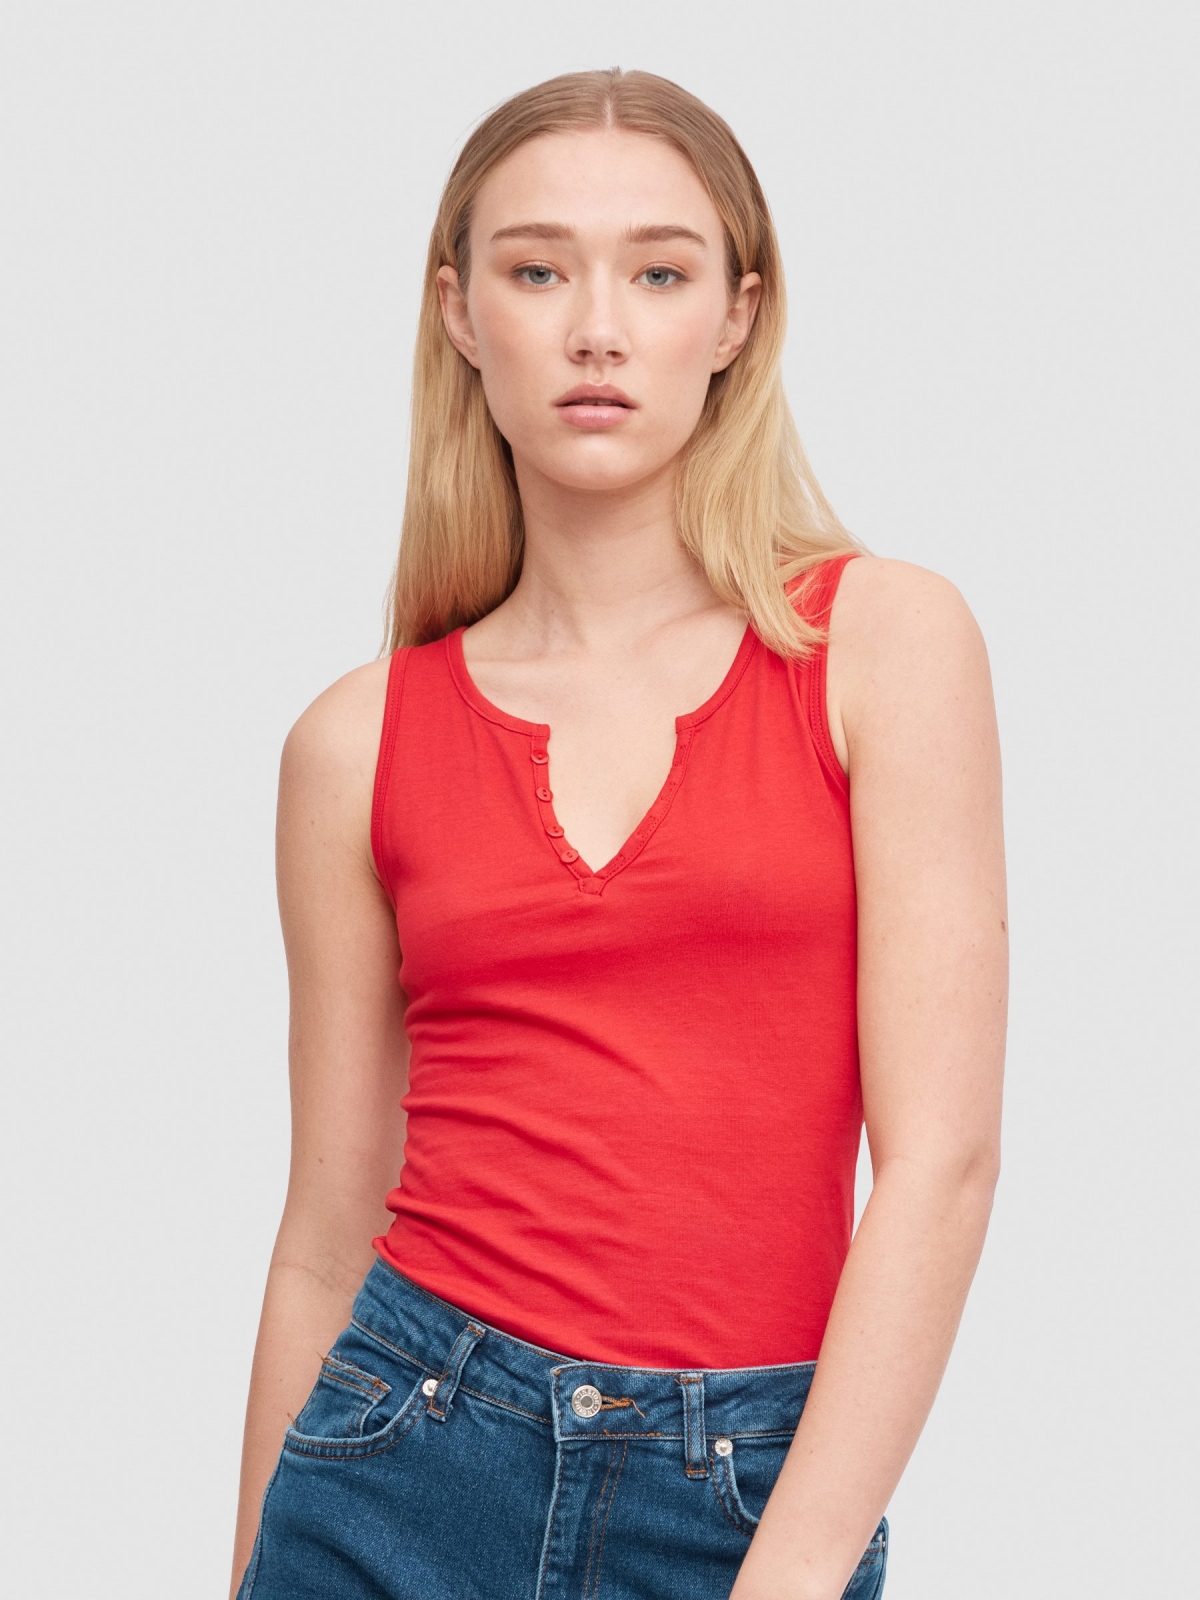 Camiseta cuello pico botones rojo vista media frontal